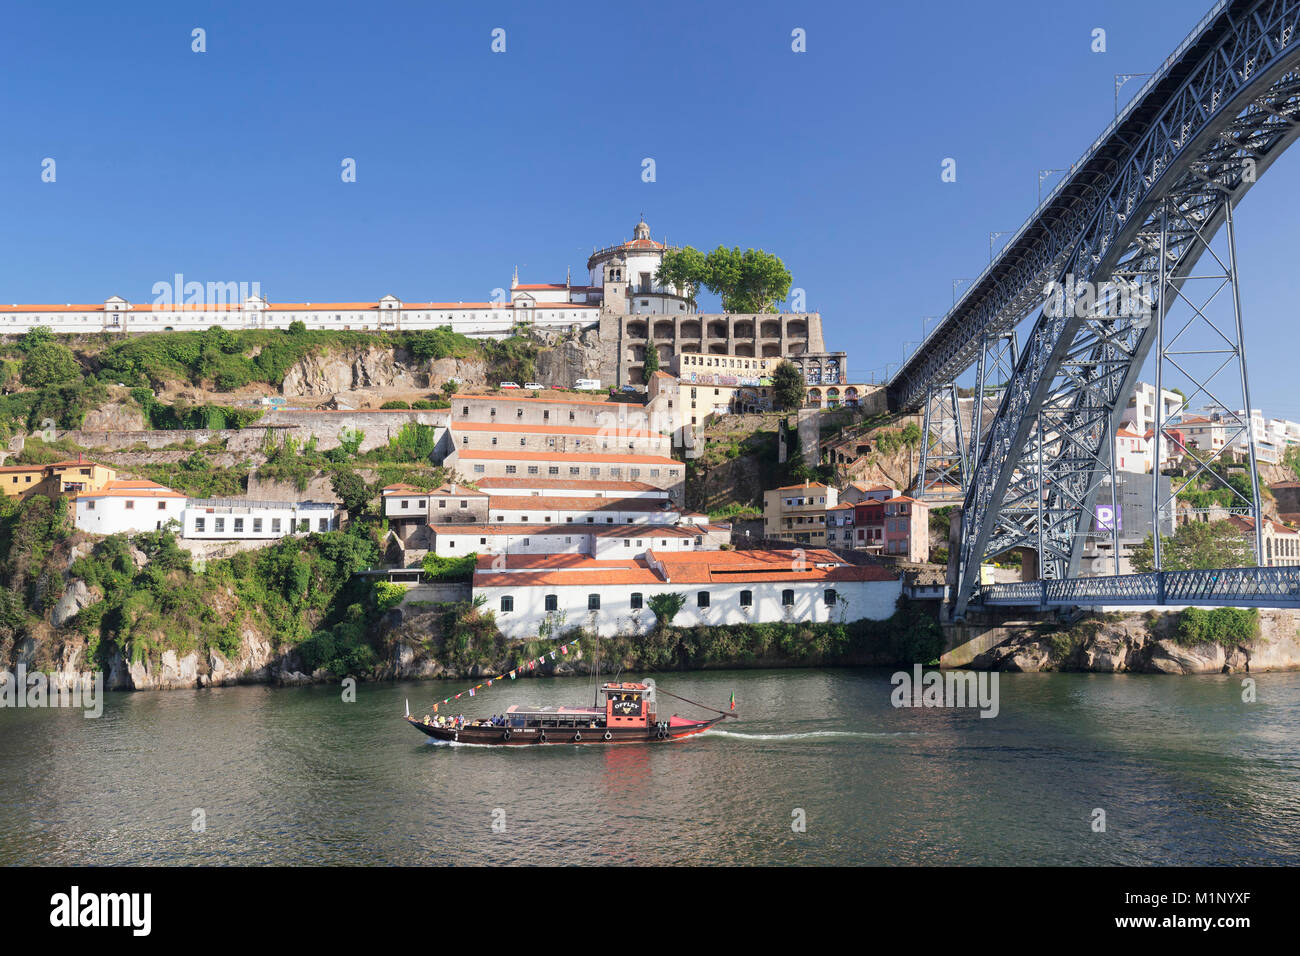 Rabelos bateau sur le fleuve Douro, Monastère Serra do Pilar, Ponte Dom Luis I Bridge, site du patrimoine mondial de l'Unesco, Porto (Porto), Portugal, Europe Banque D'Images